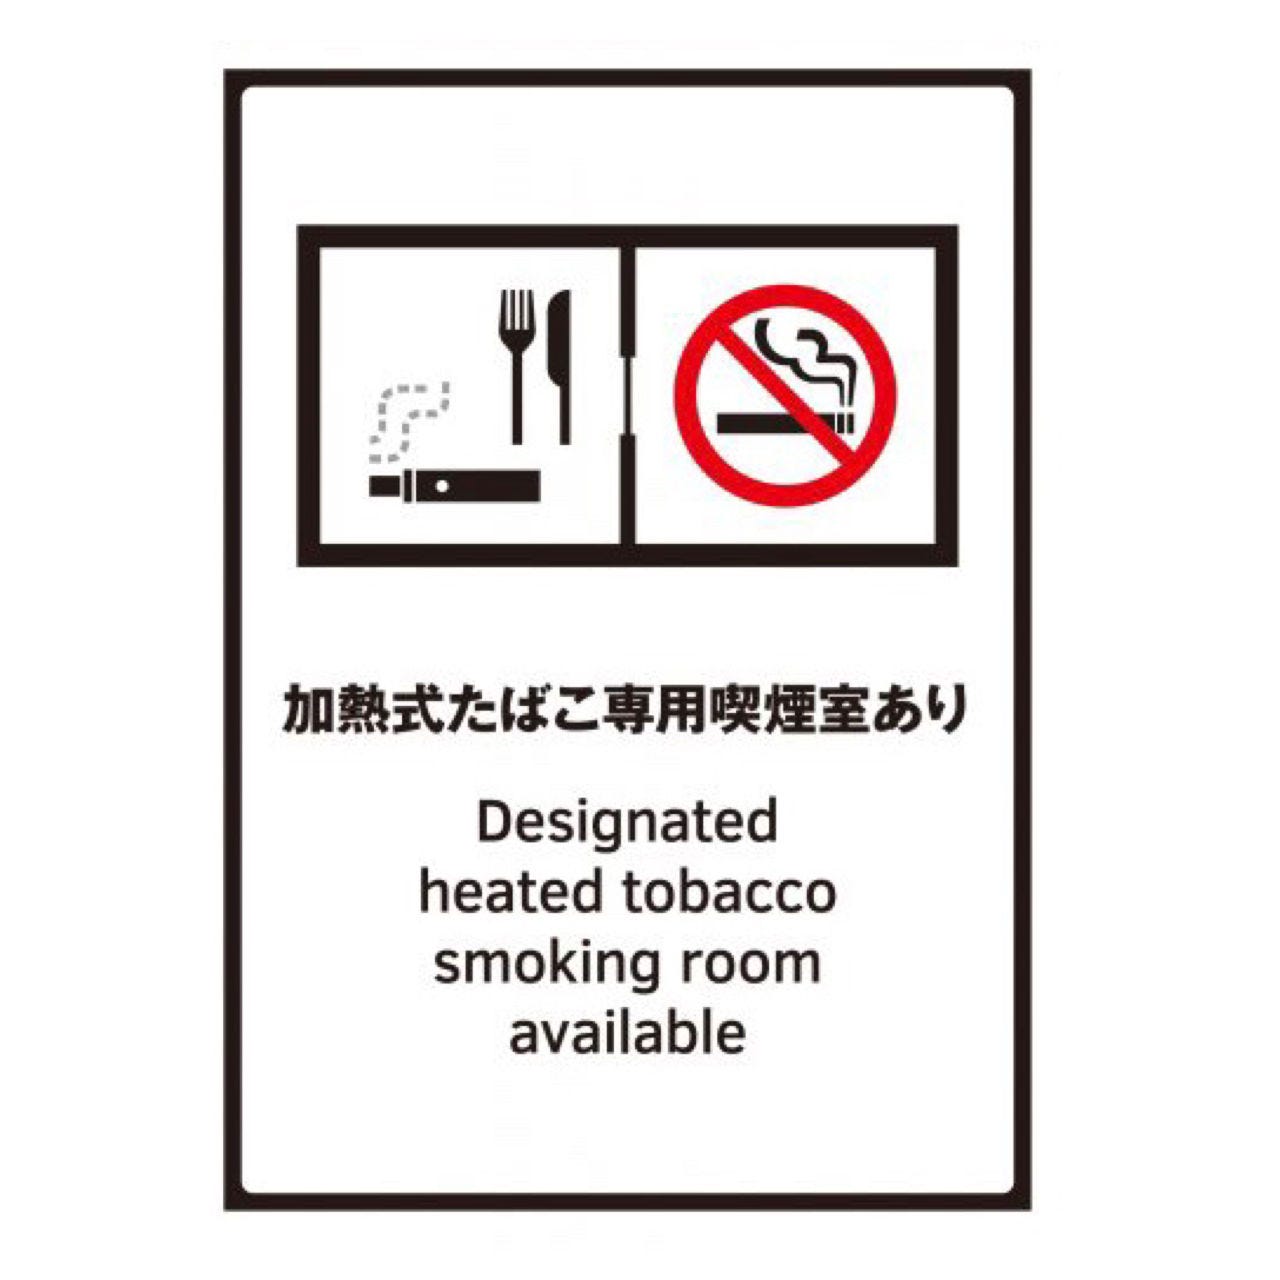 喫煙者に嬉しい、加熱式タバコは店内も専用個室にて利用可能です